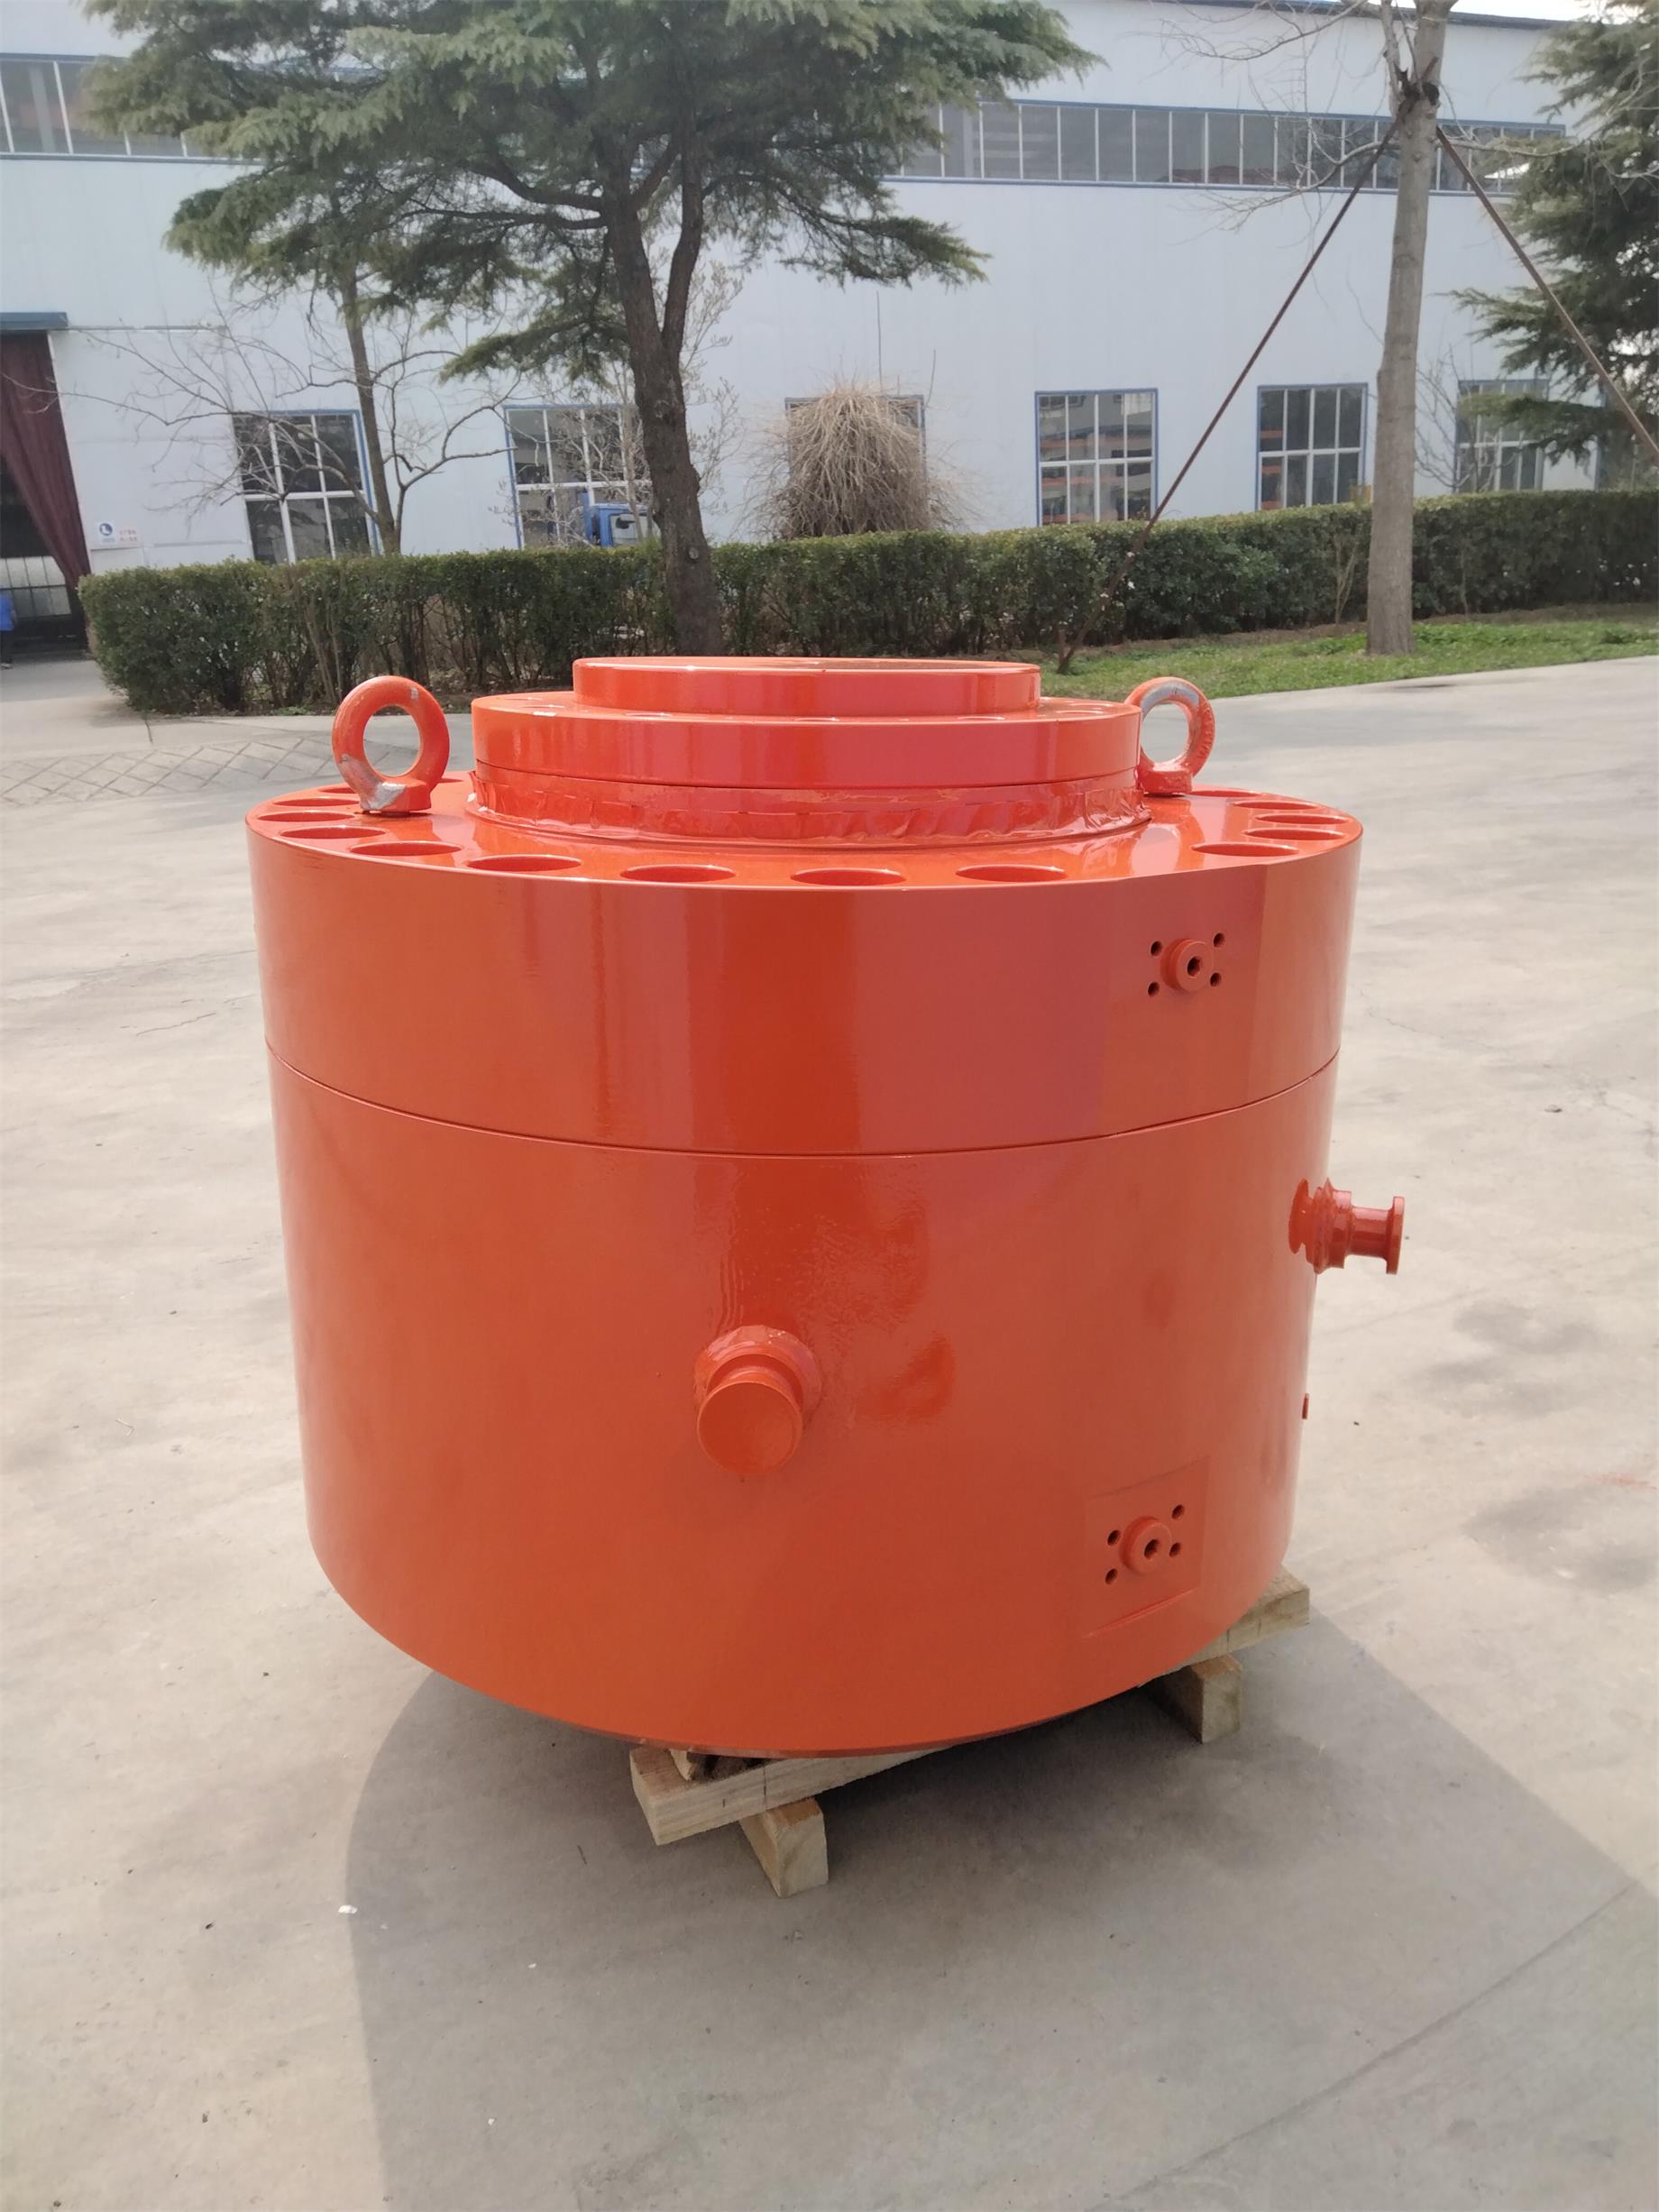 上海AGC伺服液壓缸